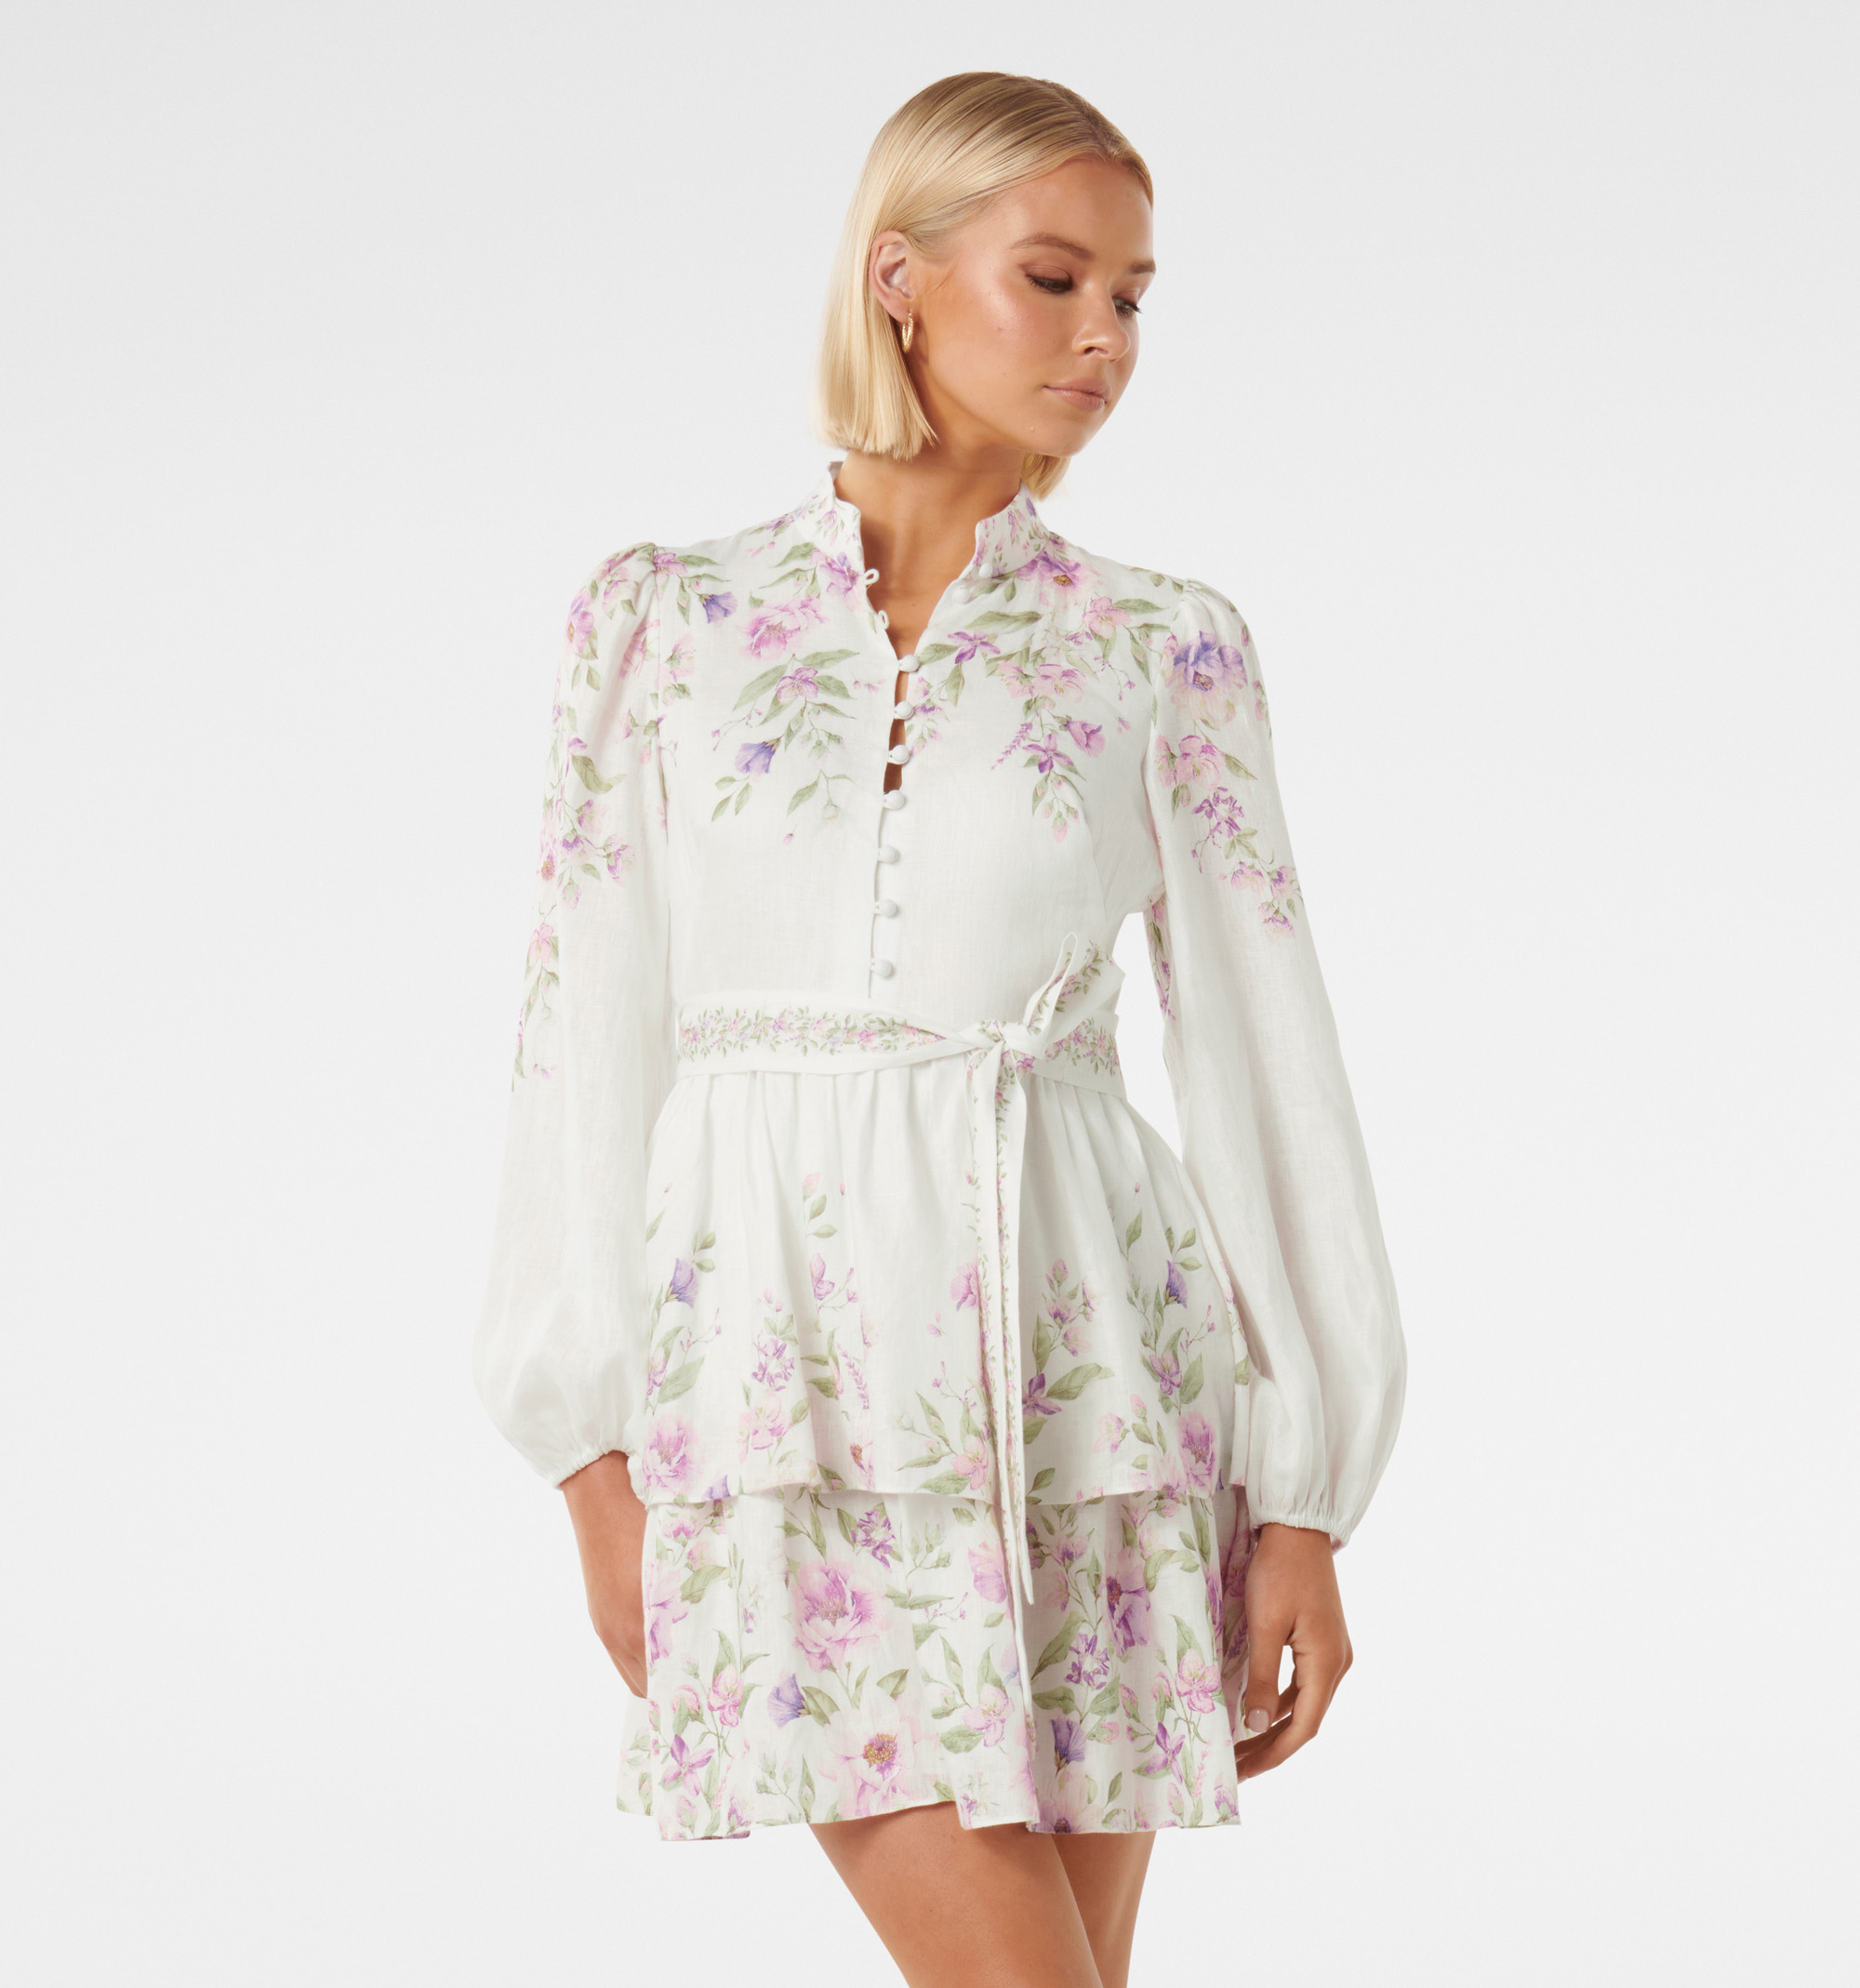 Forever 21 White Strappy Off Shoulder Summer Dress. Size L | eBay